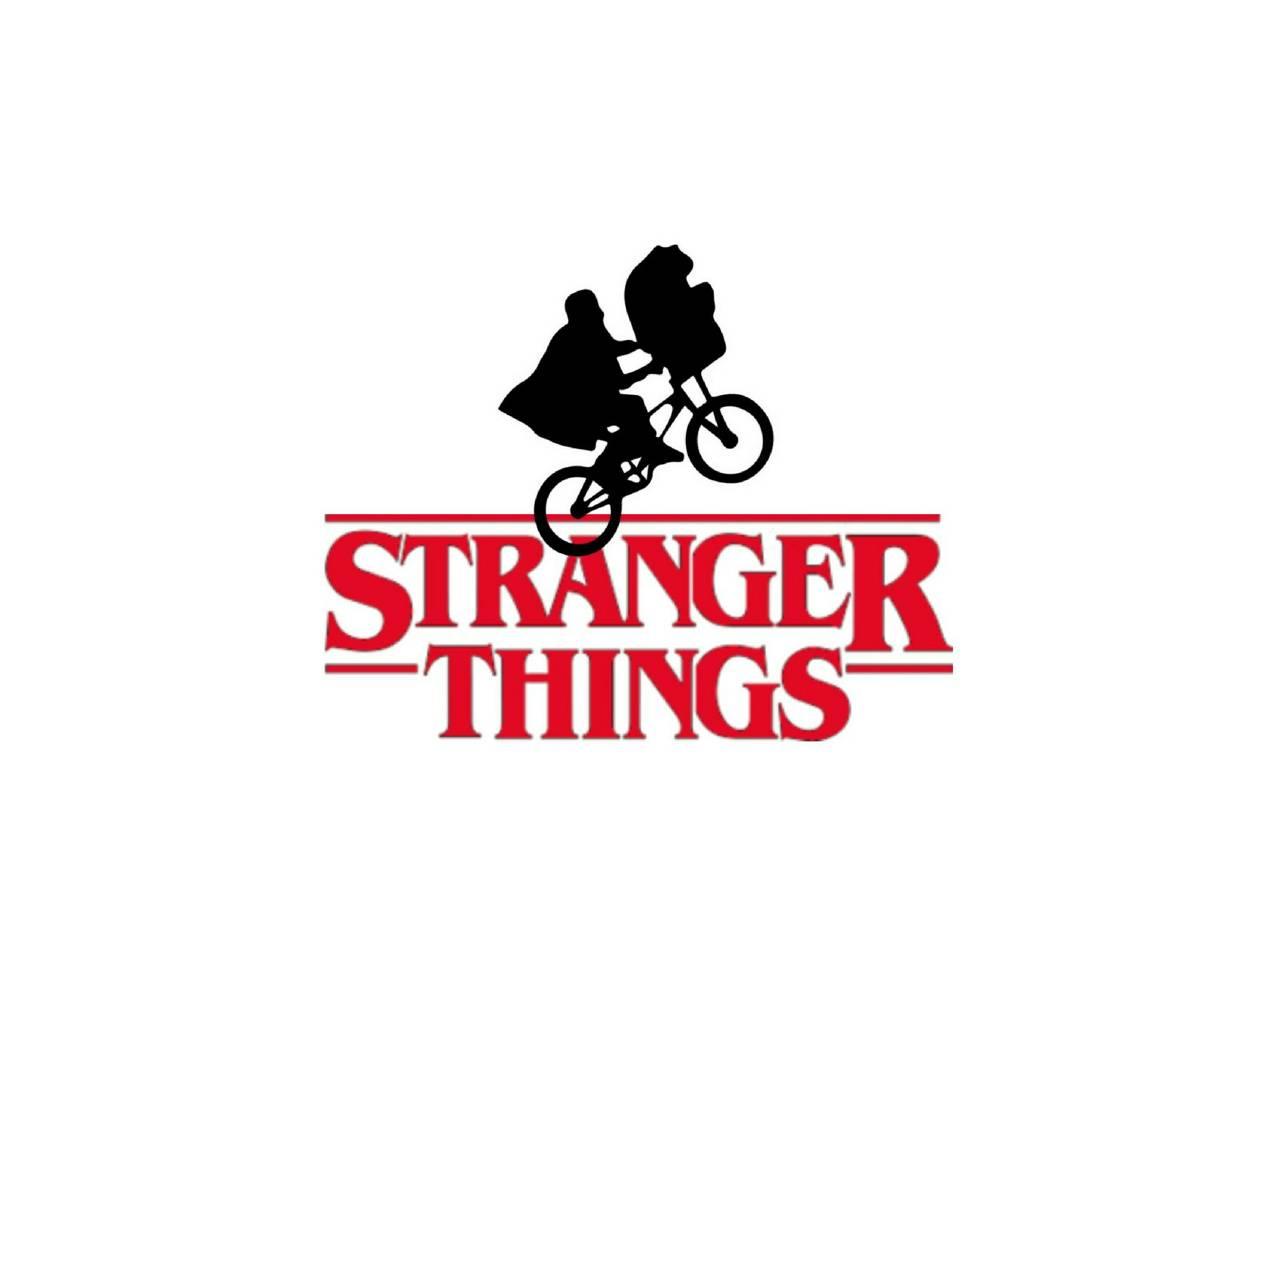 1280 x 1280 · jpeg - Stranger Things Wallpaper Bicycle - Movie Wallpaper